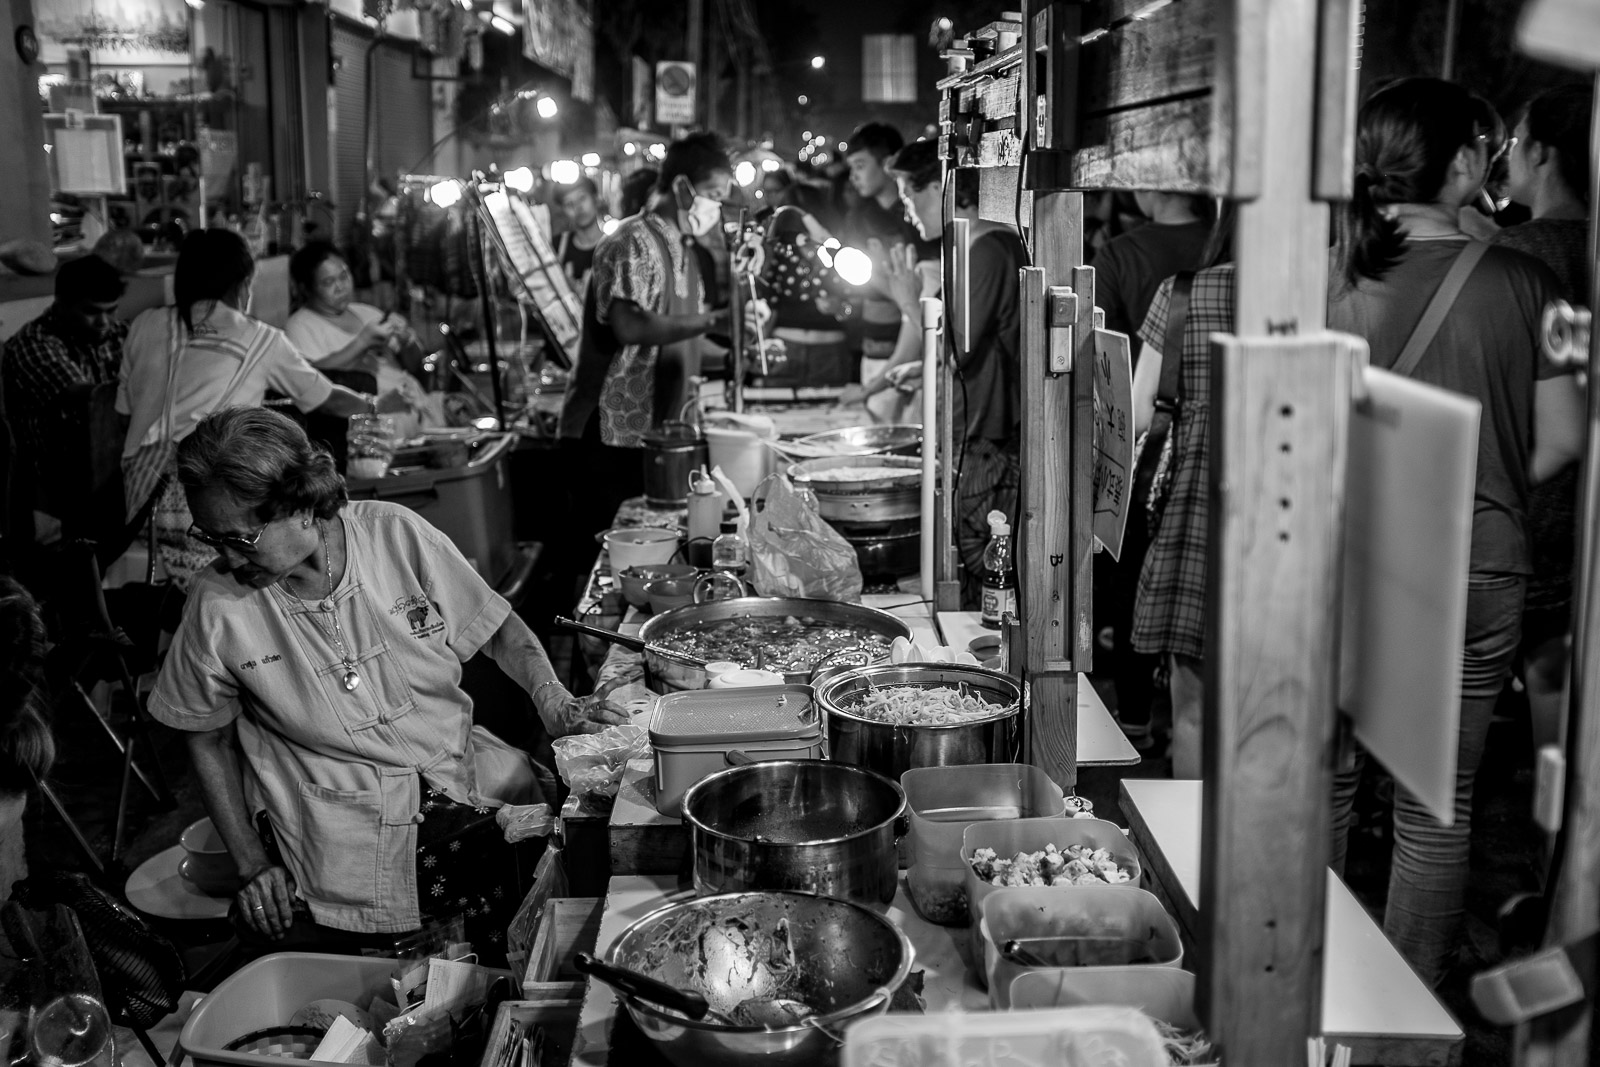 Sunday Night Market, Chiang Mai